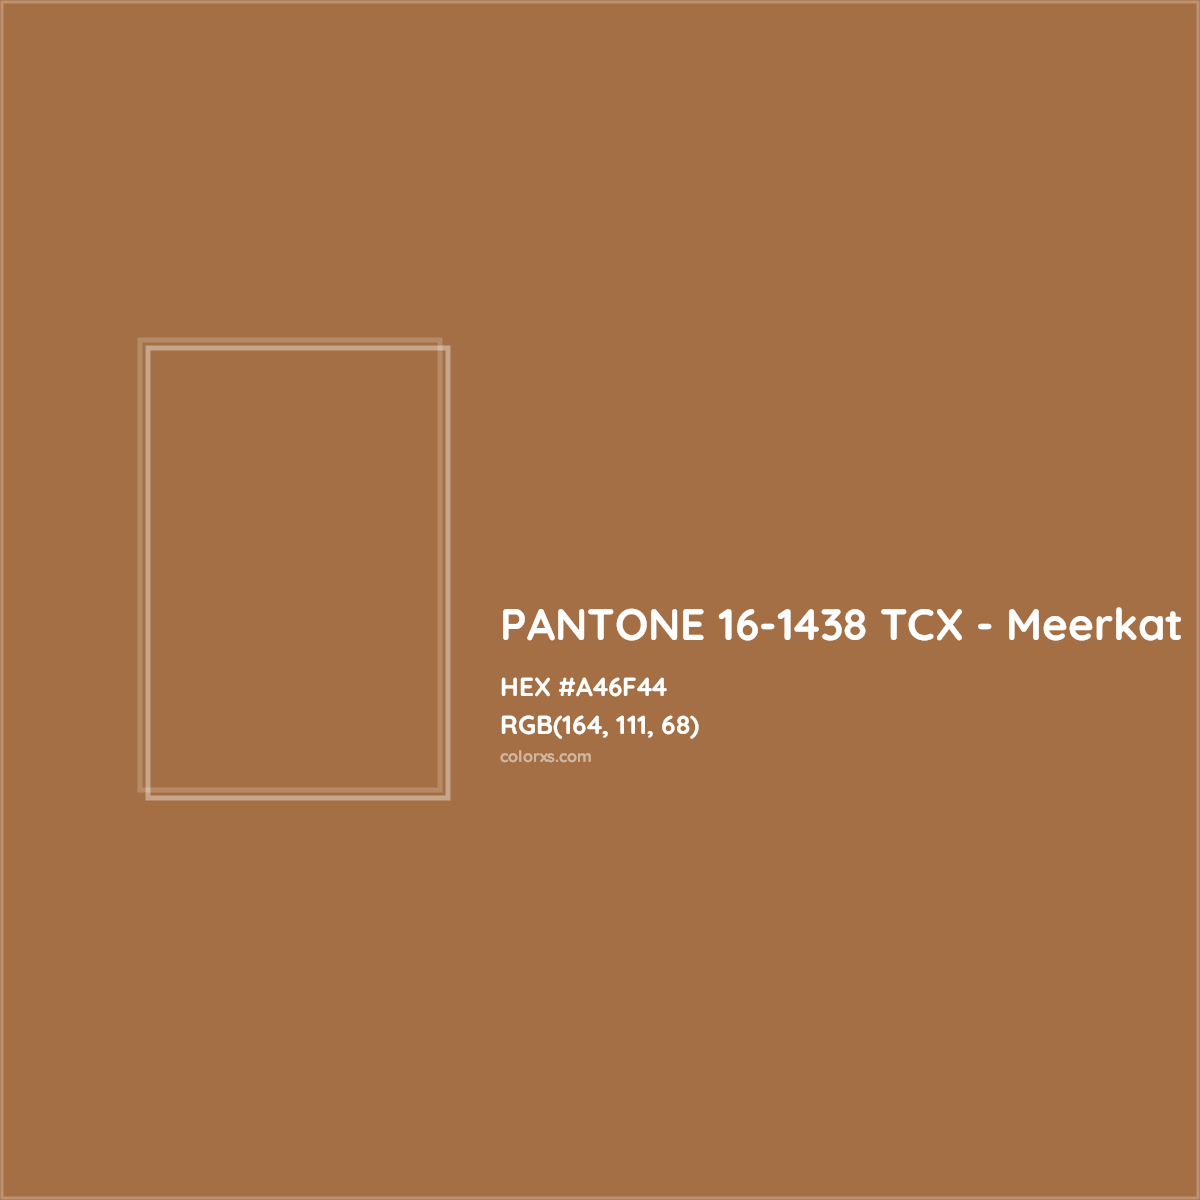 HEX #A46F44 PANTONE 16-1438 TCX - Meerkat CMS Pantone TCX - Color Code